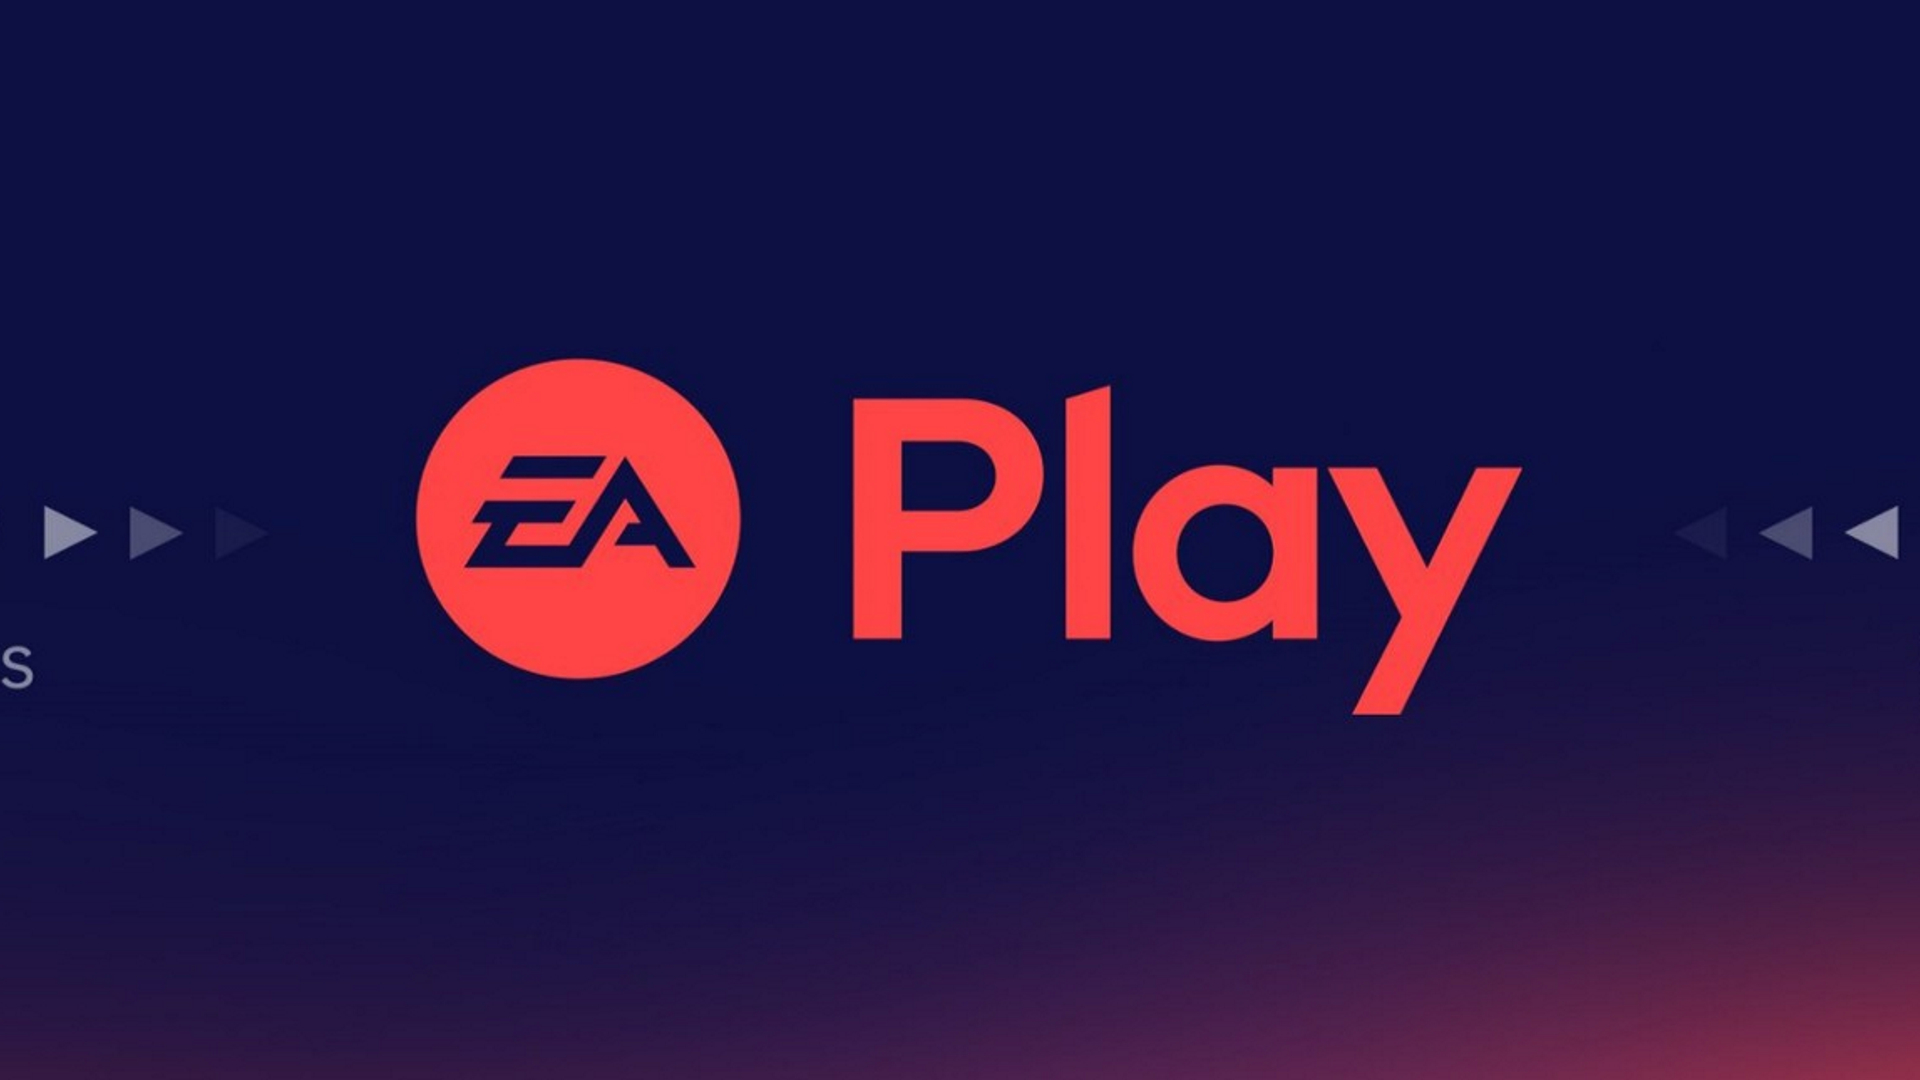 EA Access PS4 переименовали в EA Play. Обзор EA Play PS4.